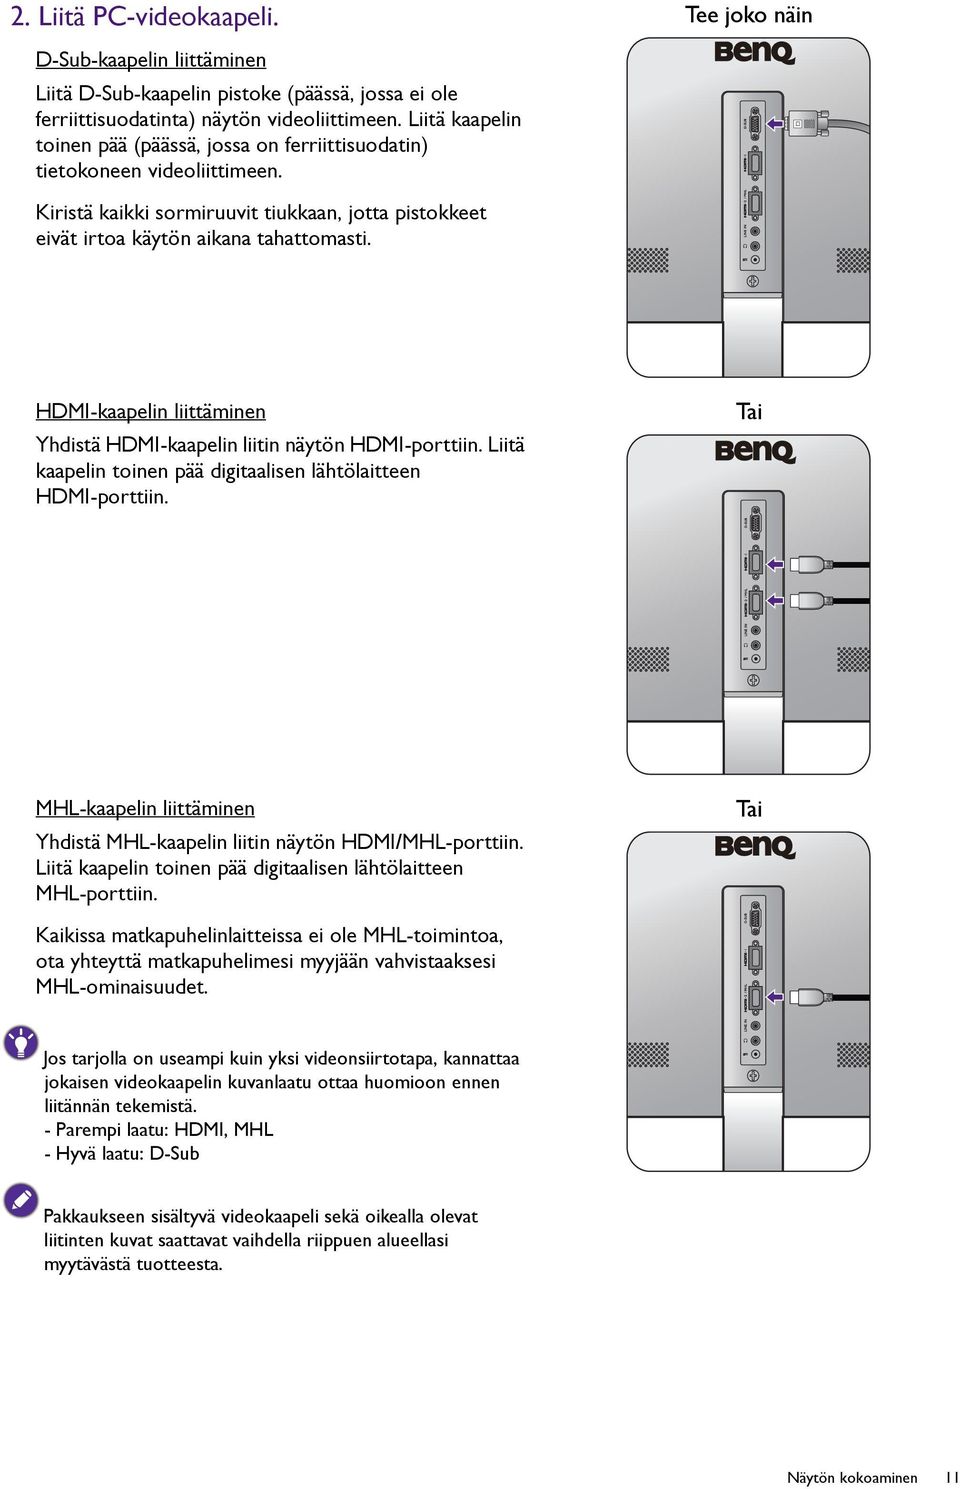 HDMI-kaapelin liittäminen Yhdistä HDMI-kaapelin liitin näytön HDMI-porttiin. Liitä kaapelin toinen pää digitaalisen lähtölaitteen HDMI-porttiin.